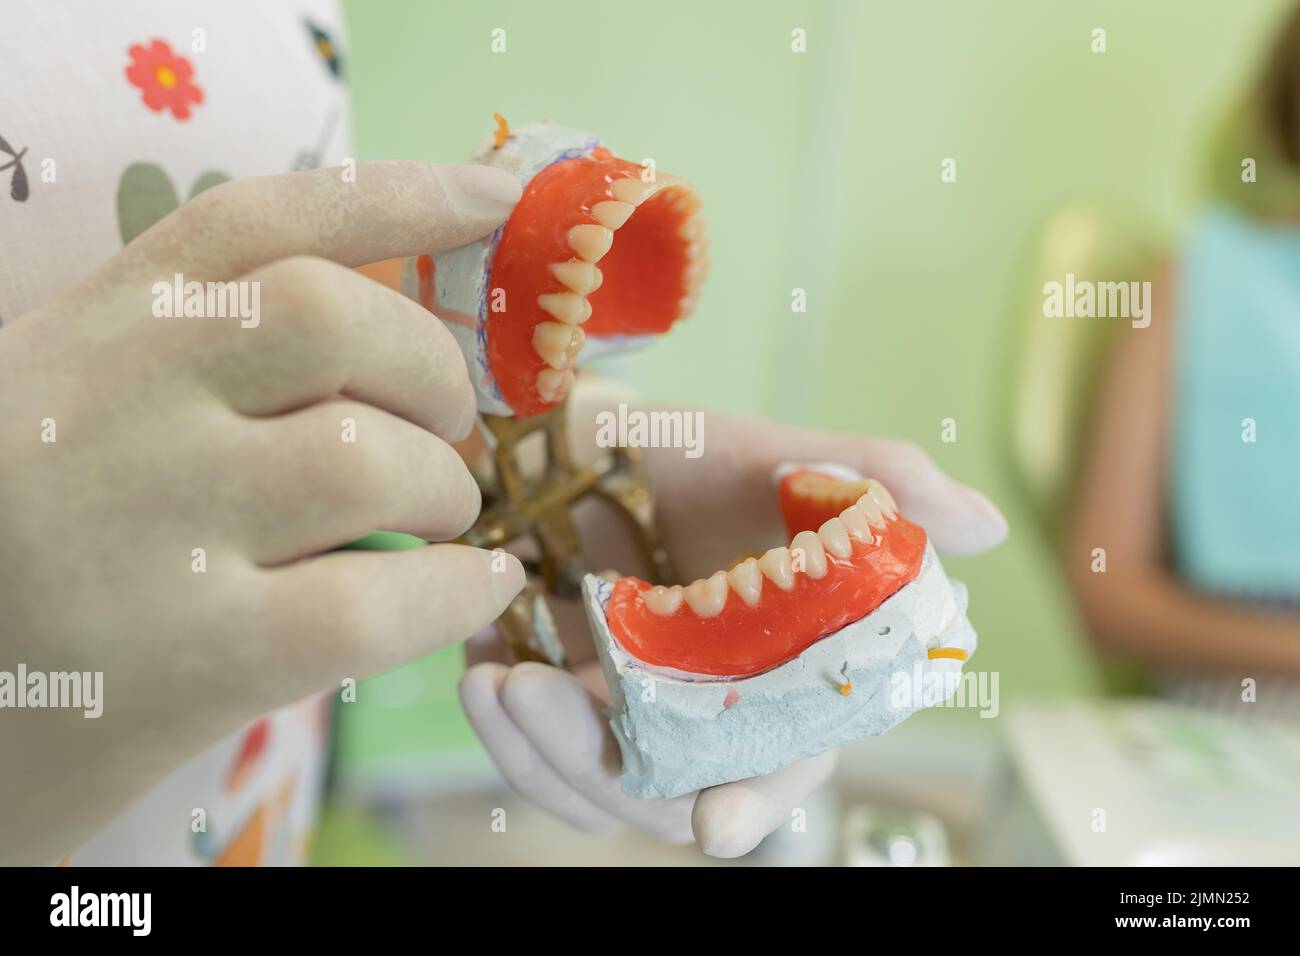 Le dentiste tient des prothèses dentaires entre ses mains.Prothèse dentaire dans les mains du médecin en gros plan.Vue avant de la prothèse complète.Concept de dentisterie Banque D'Images